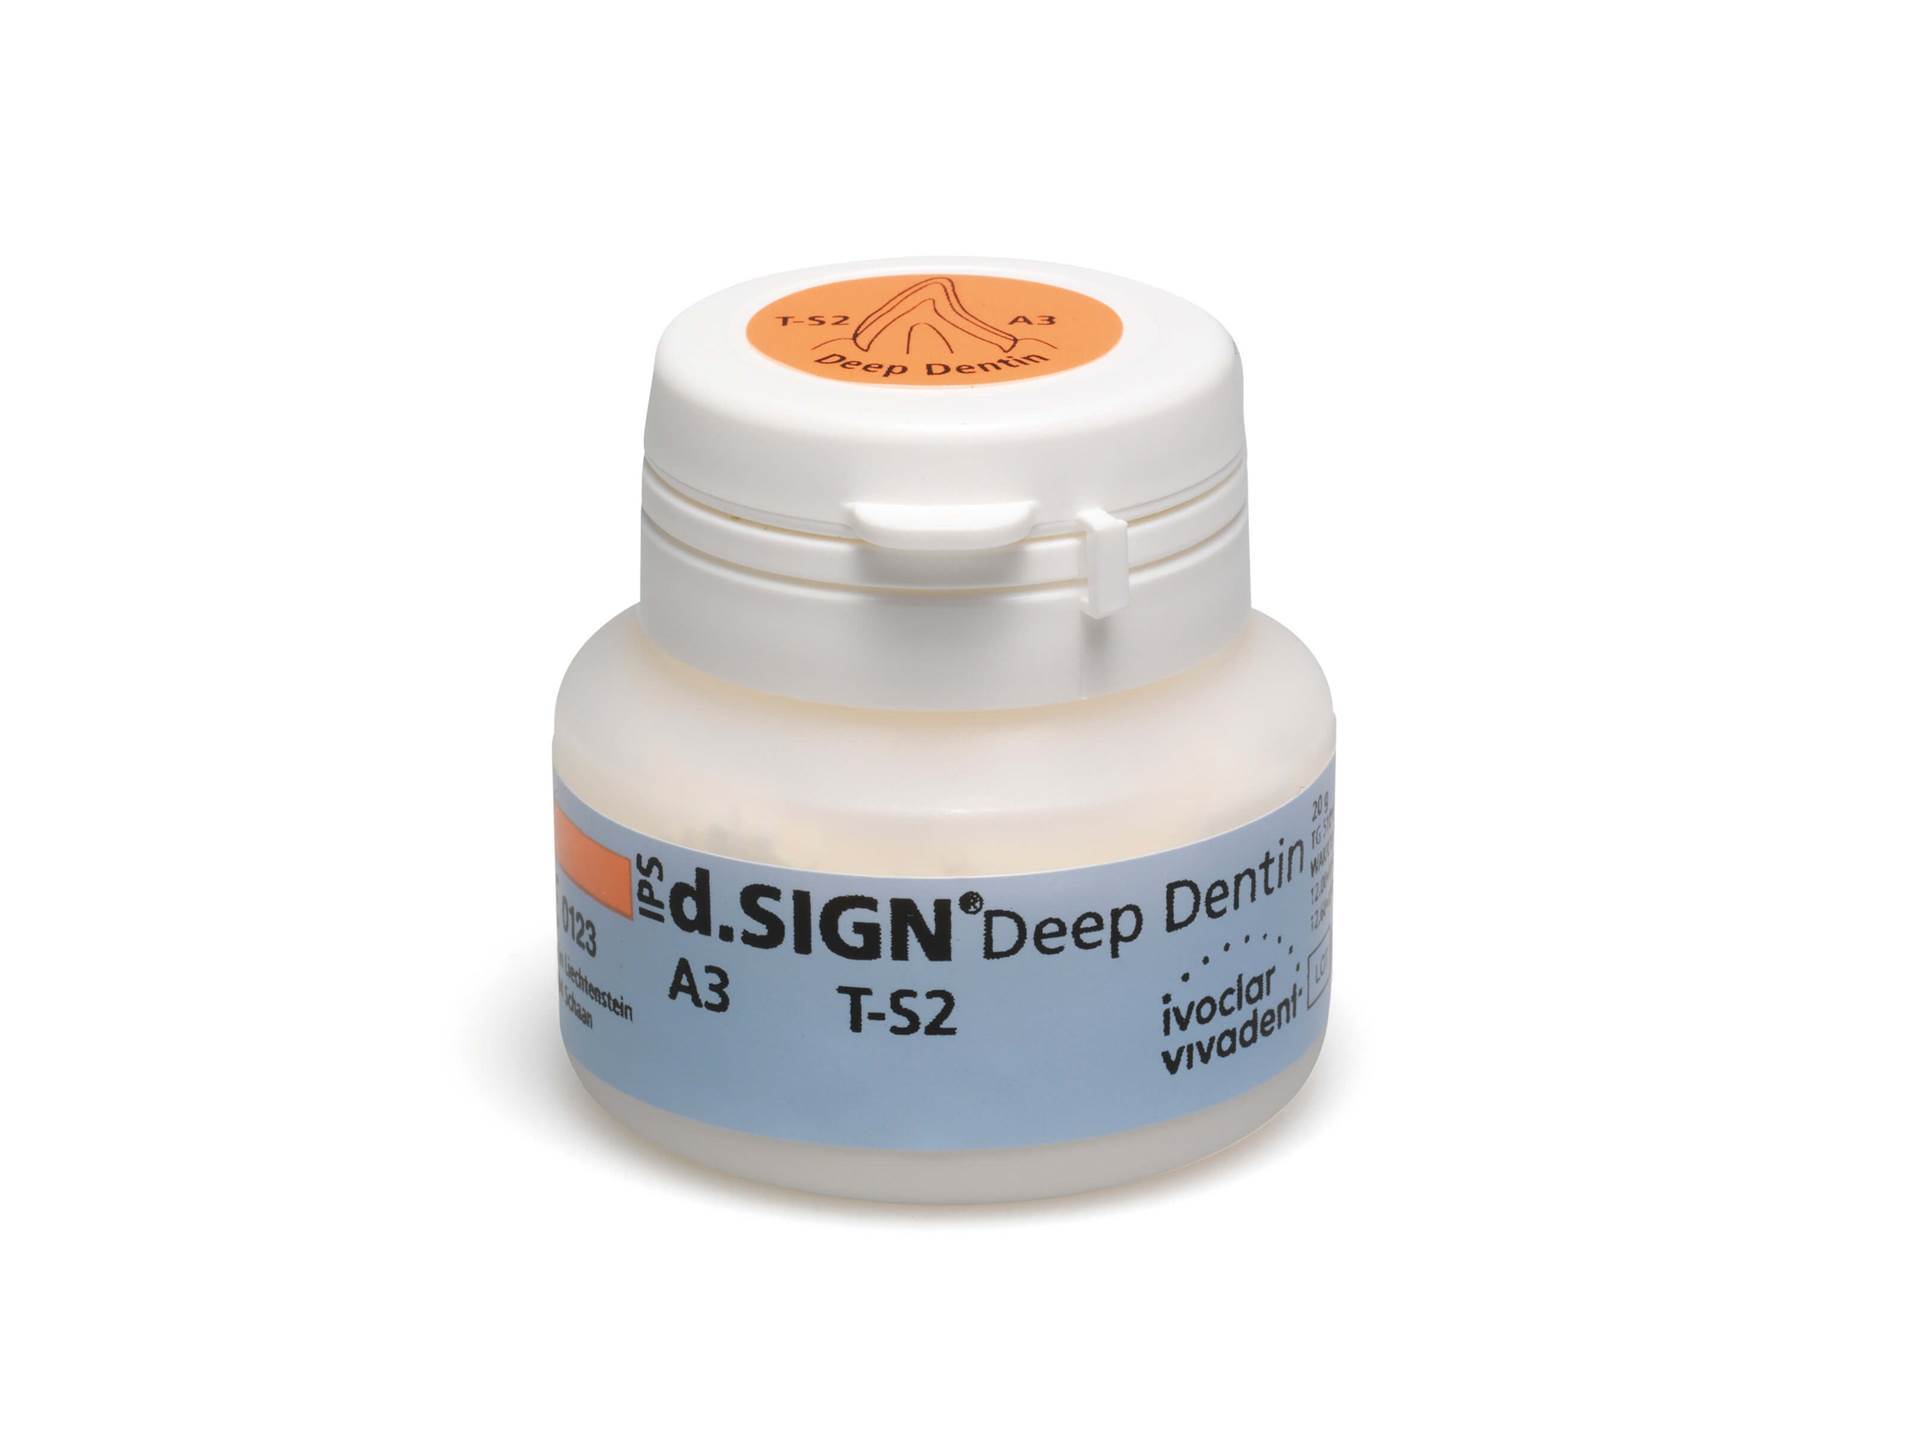 IPS d.Sign Deep Dentin 20g